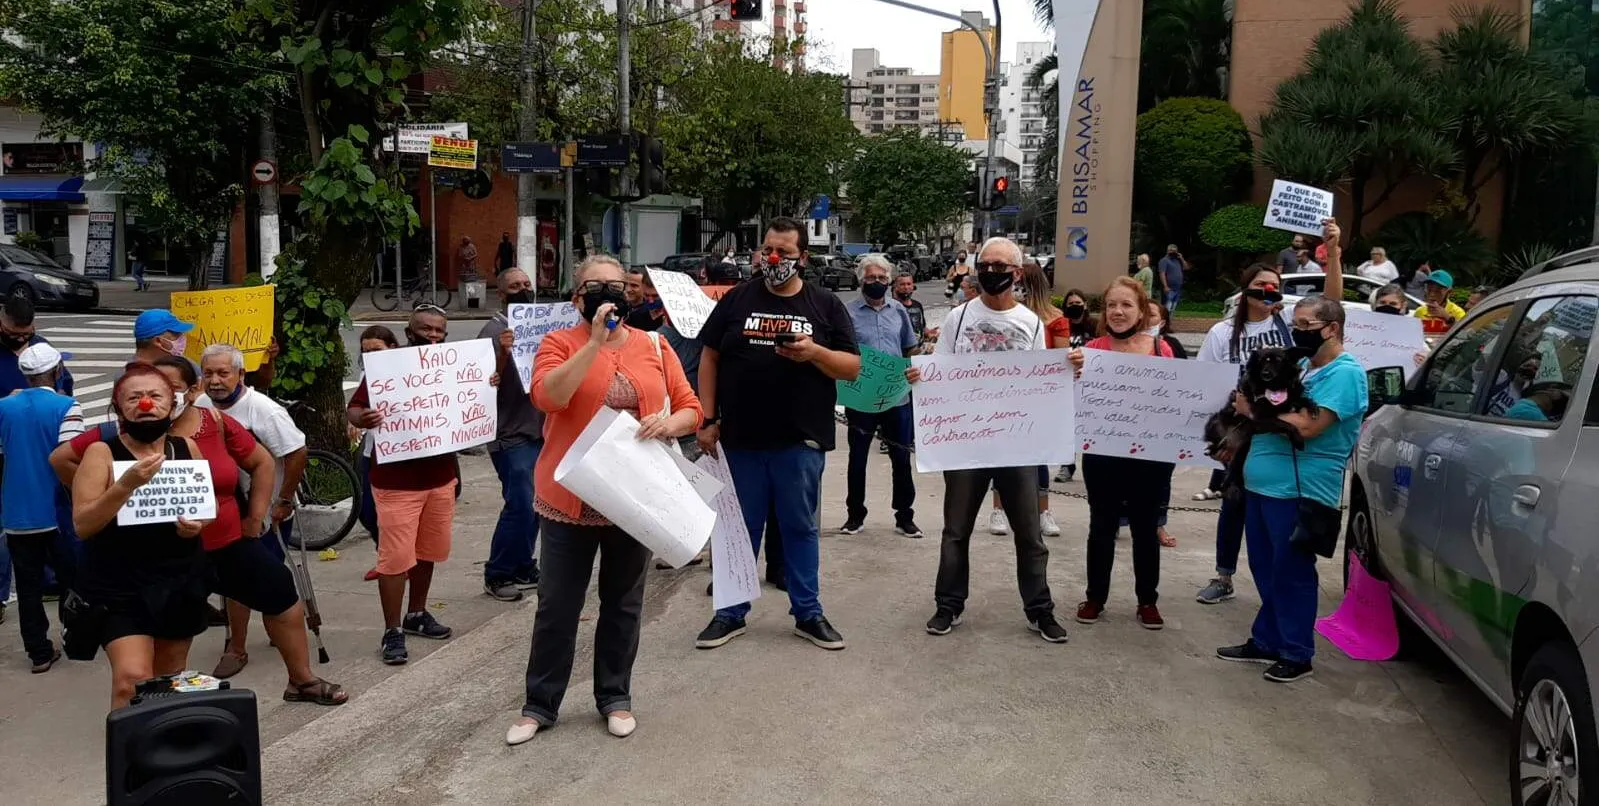  Um grupo de manifestantes esteve em frente à Prefeitura na tarde desta quarta-feira (13) 